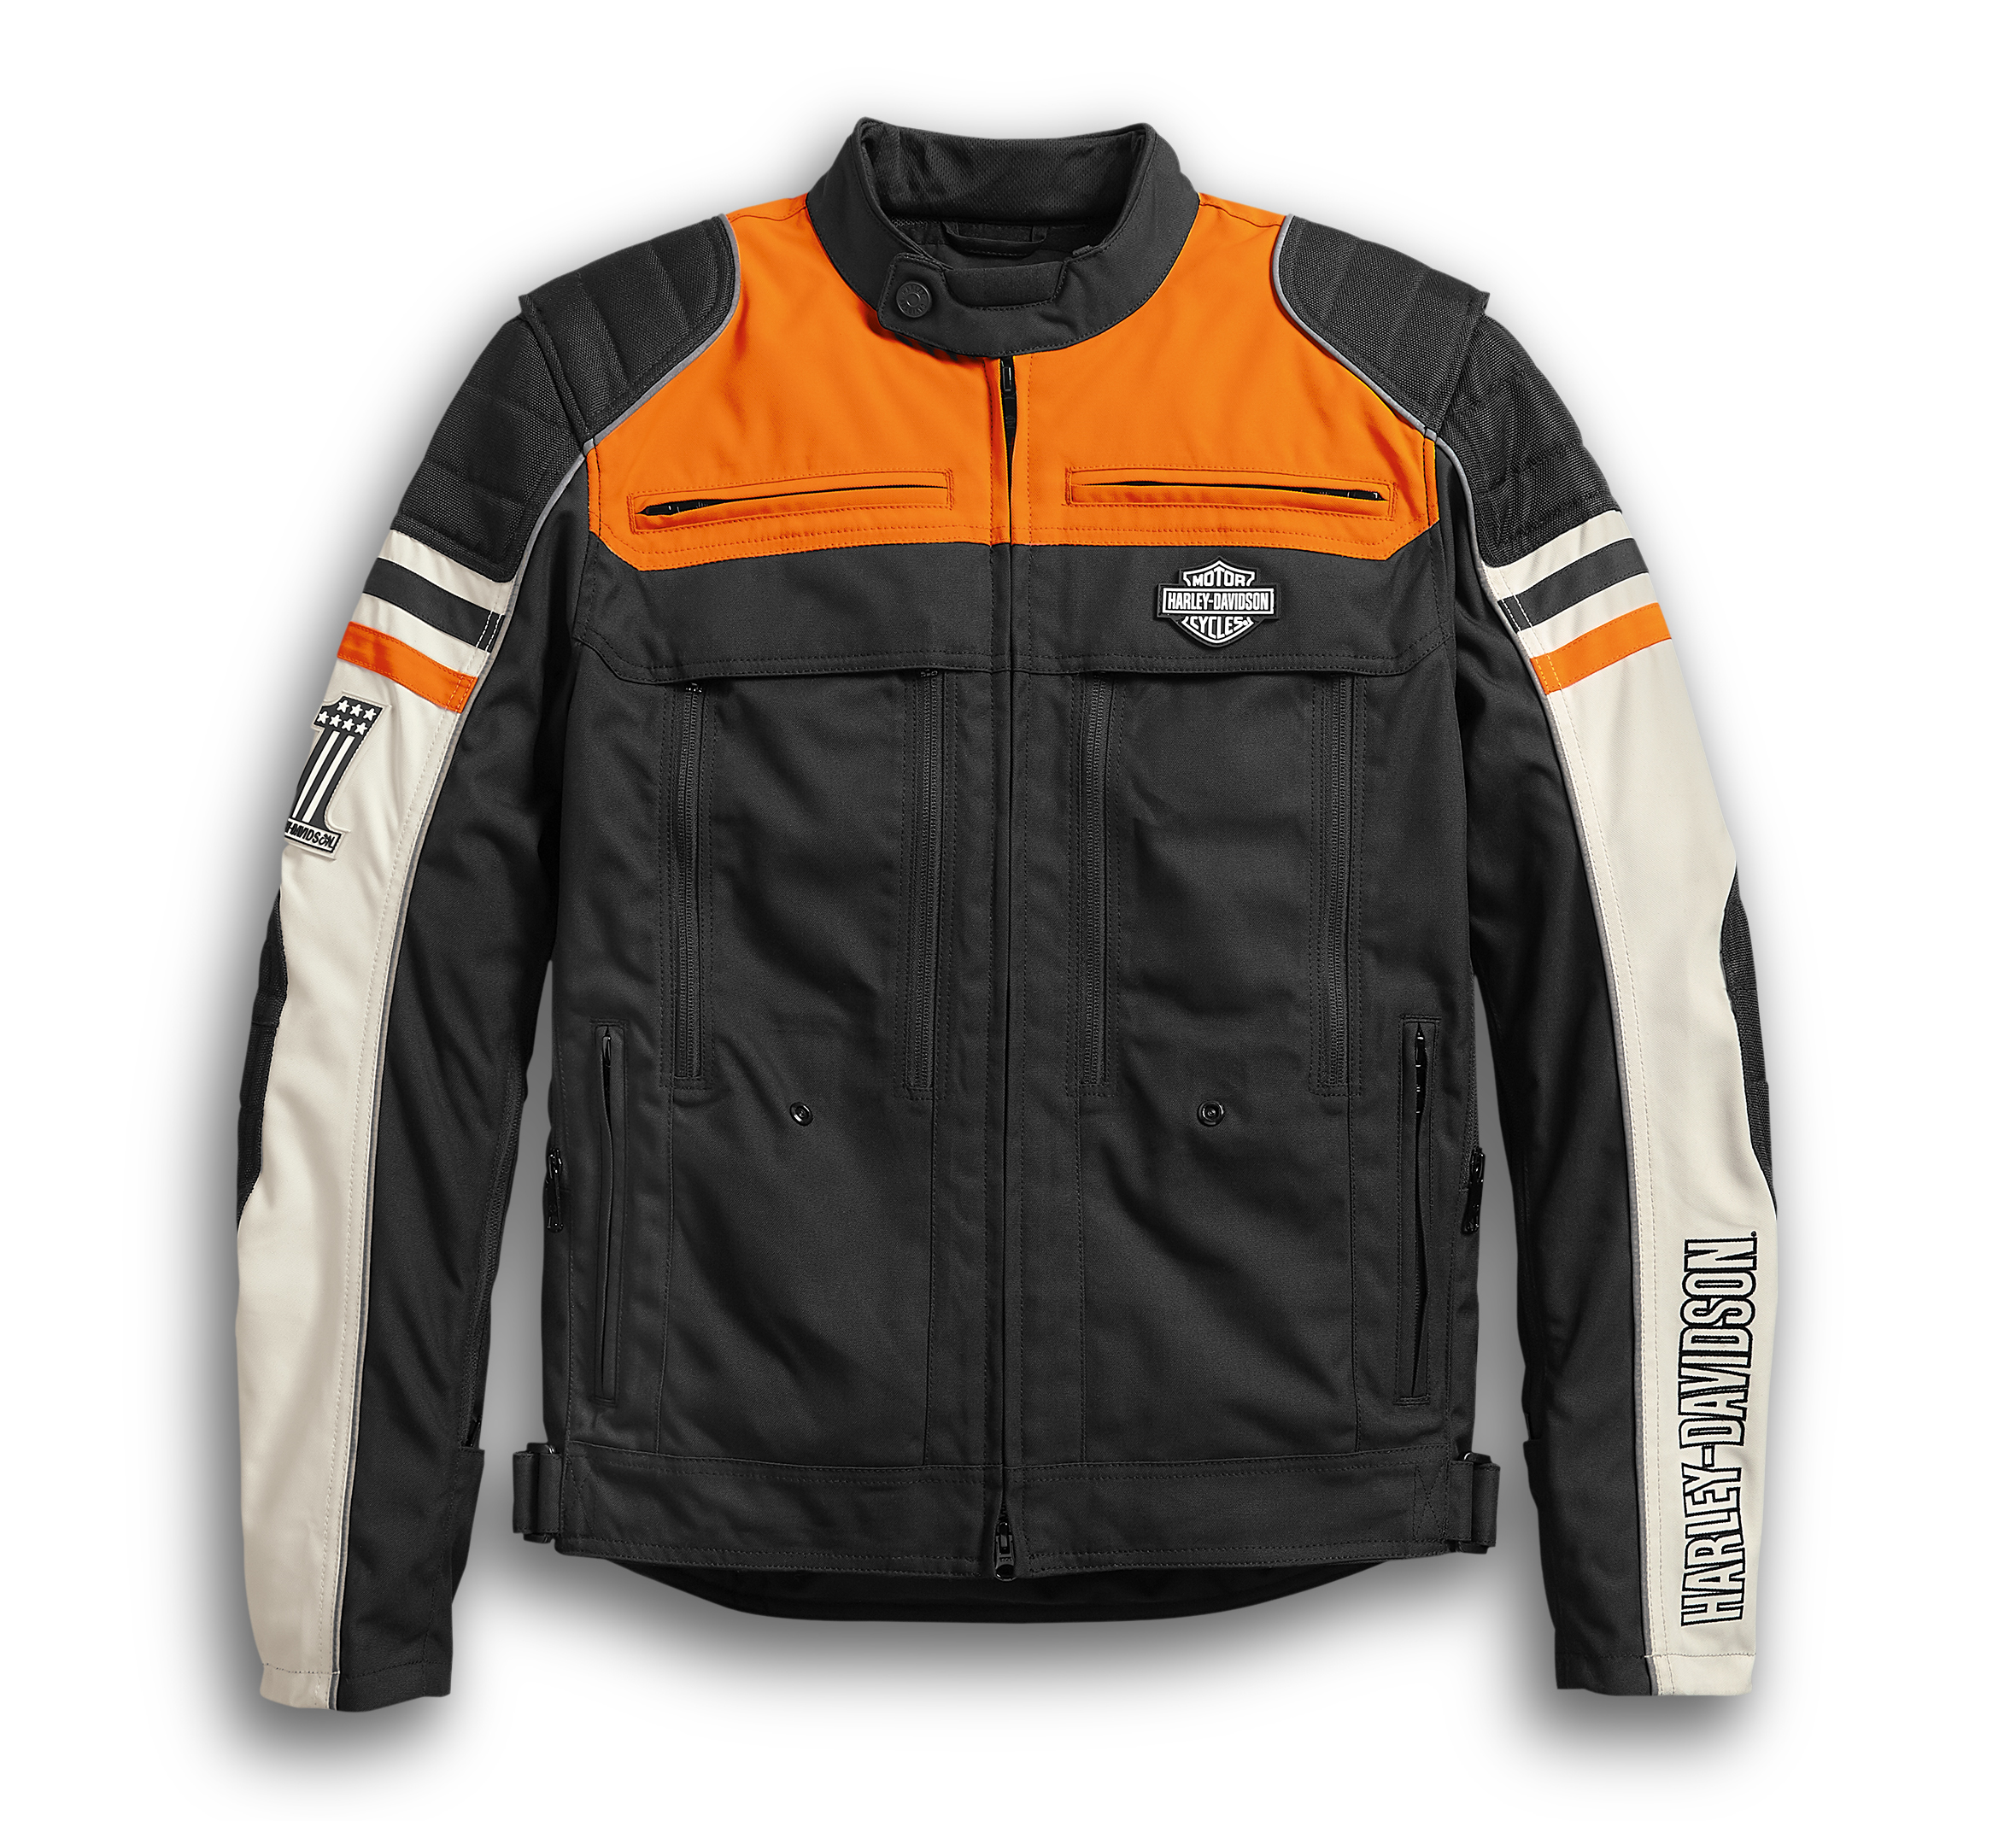 Metonga Switchback Lite Riding Jacket Fur Herren 98393 19em Harley Davidson Deutschland